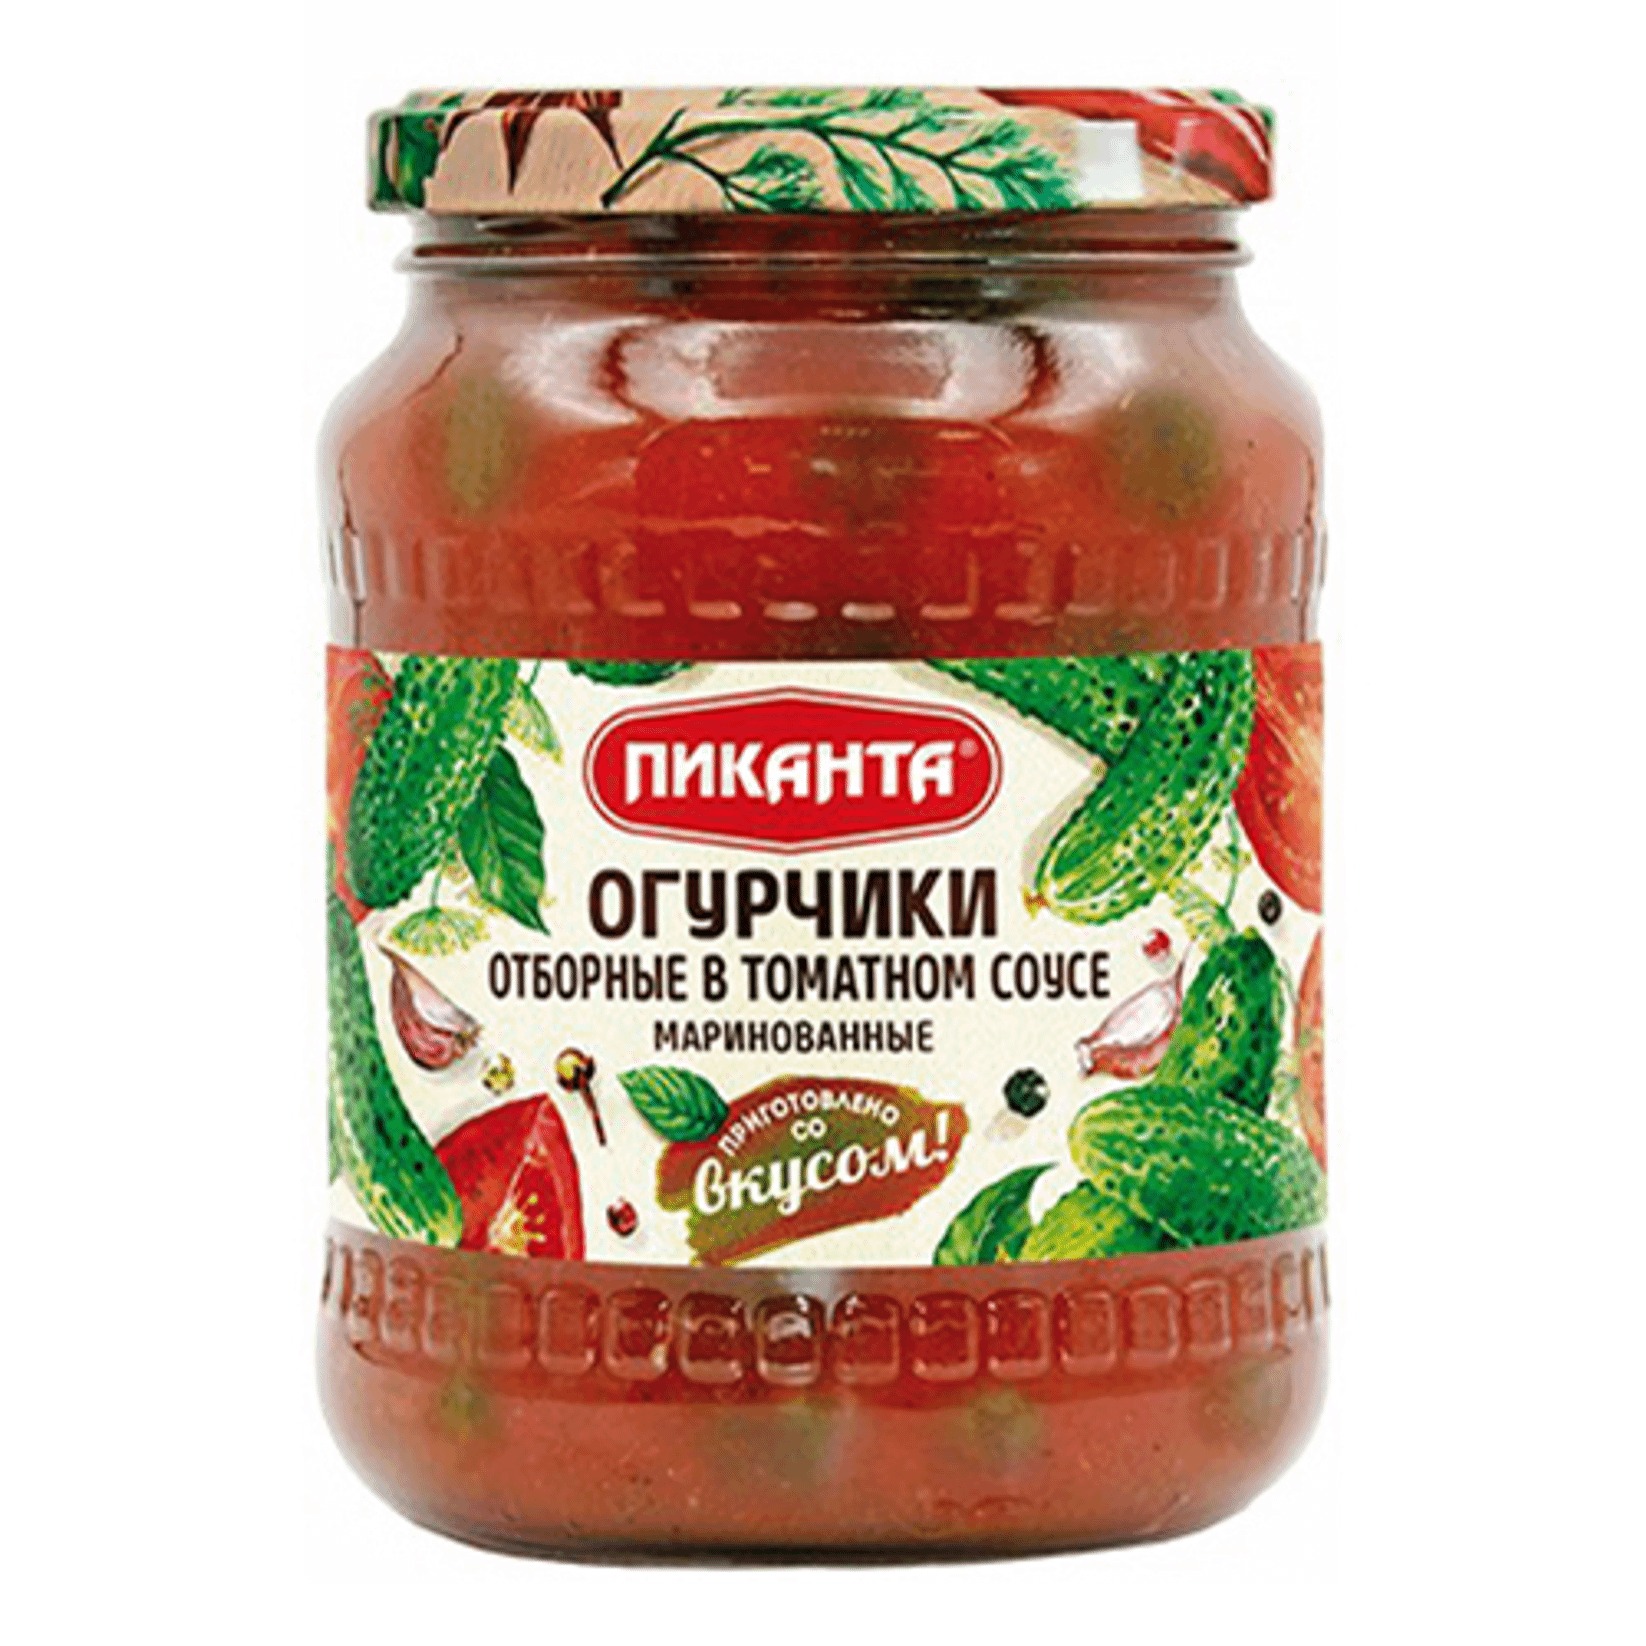 Огурчики Пиканта маринованные в томатном соусе, 700 г